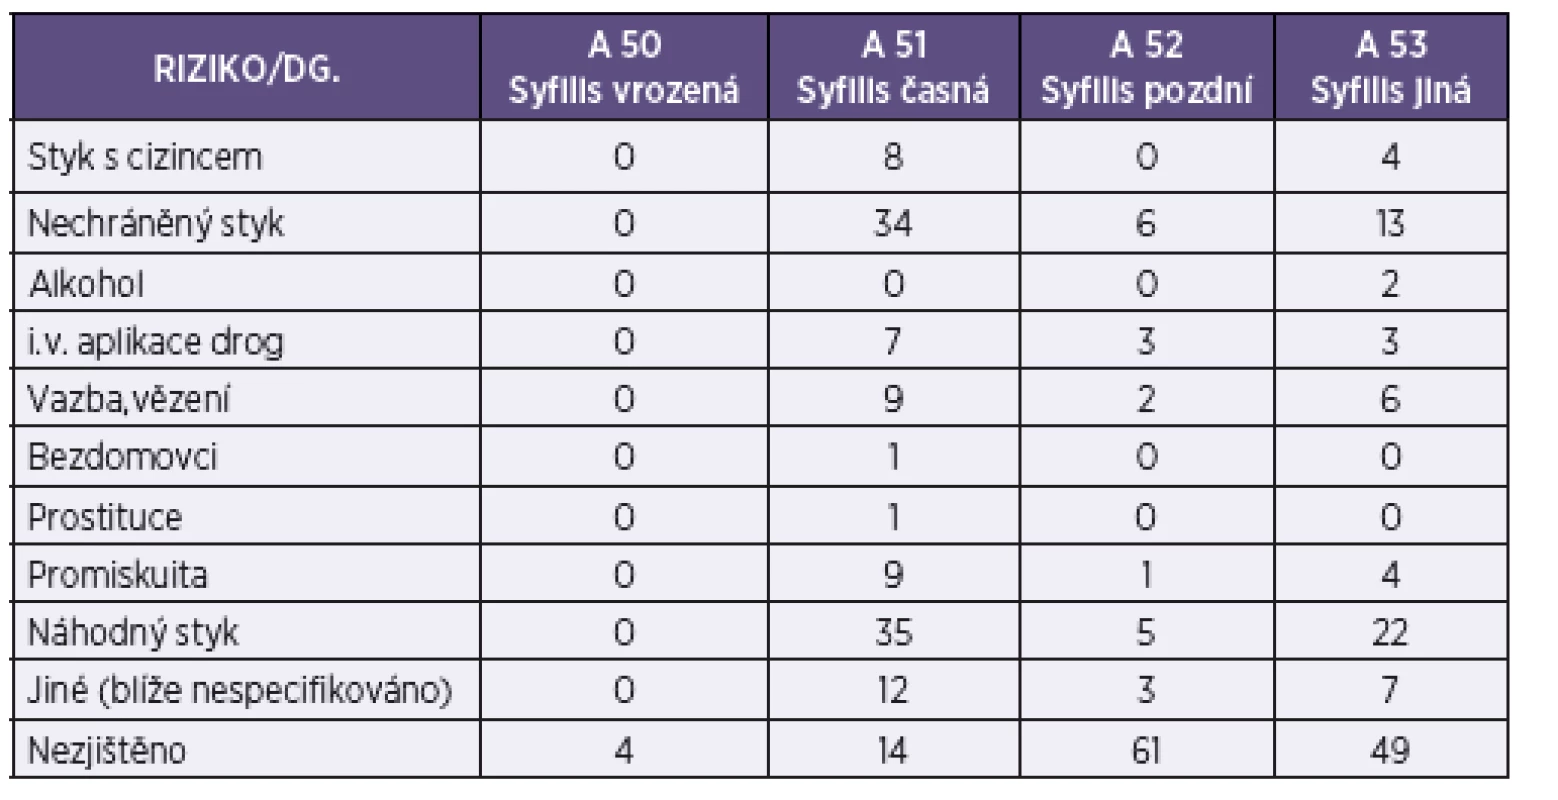 Rozdělení hlášených případů syfilis podle rizikového chování ve východočeském regionu v letech 1999–2011
Table 1. Distribution of reported cases of syphilis by high-risk behaviour in the East Bohemian Region, 1999–2011